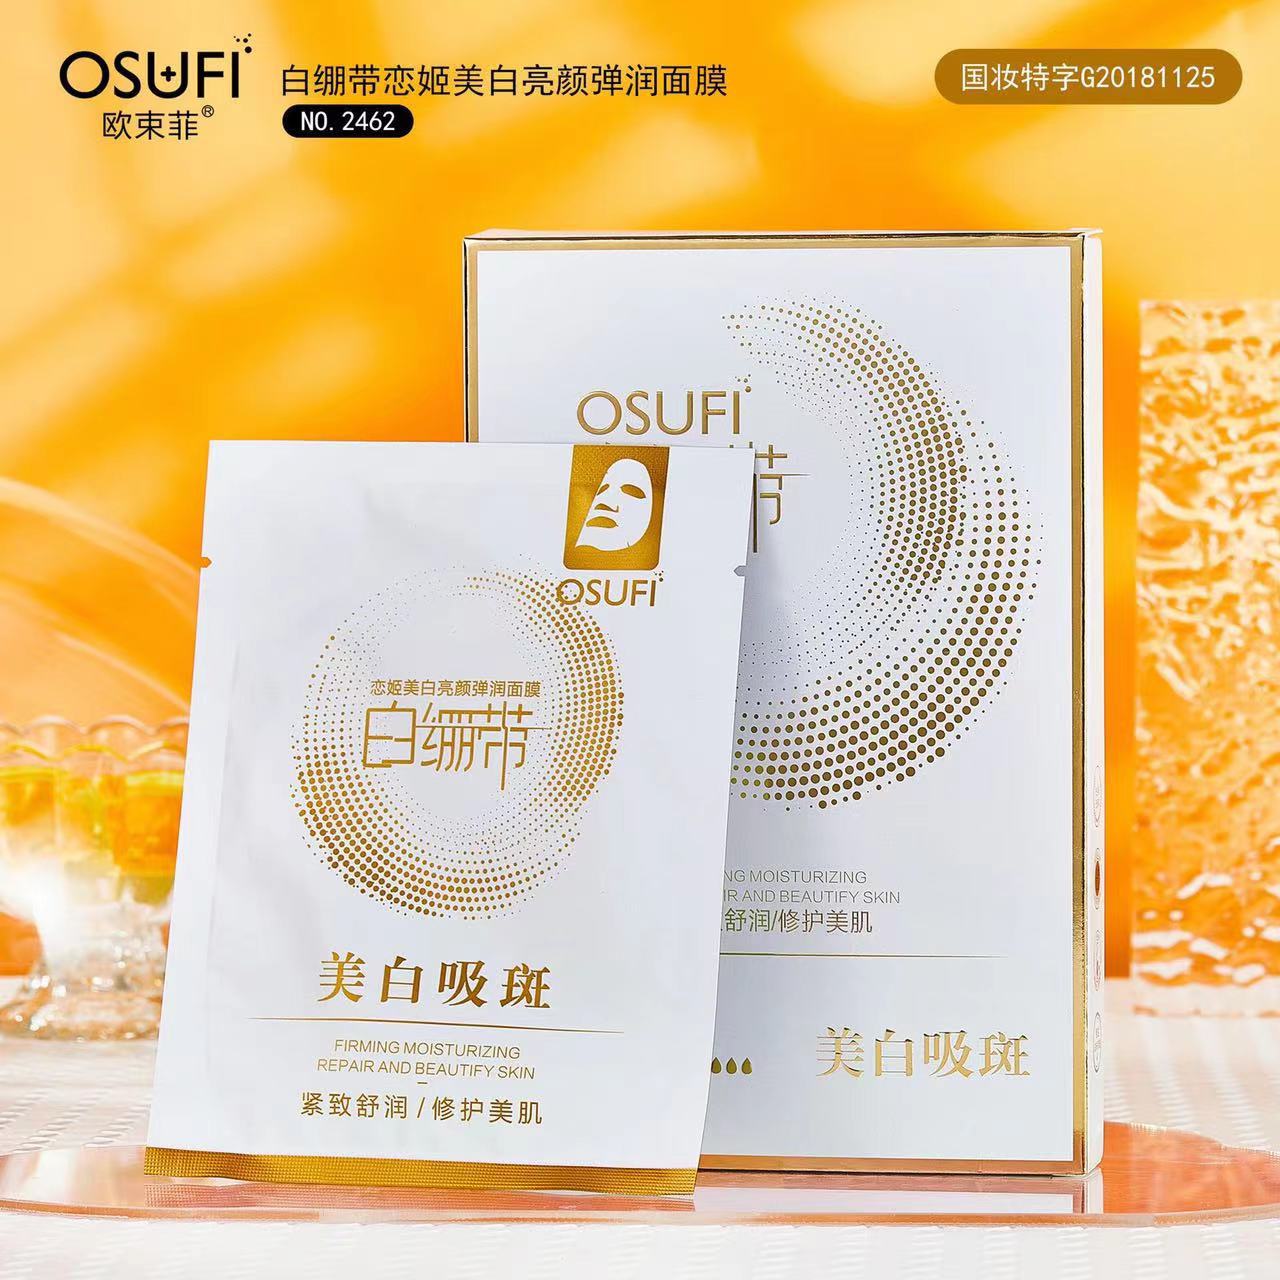 Ou Fei Fei Bandage skin whitening Liang Yan Facial mask Moisture Replenish water skin whitening Facial mask live broadcast